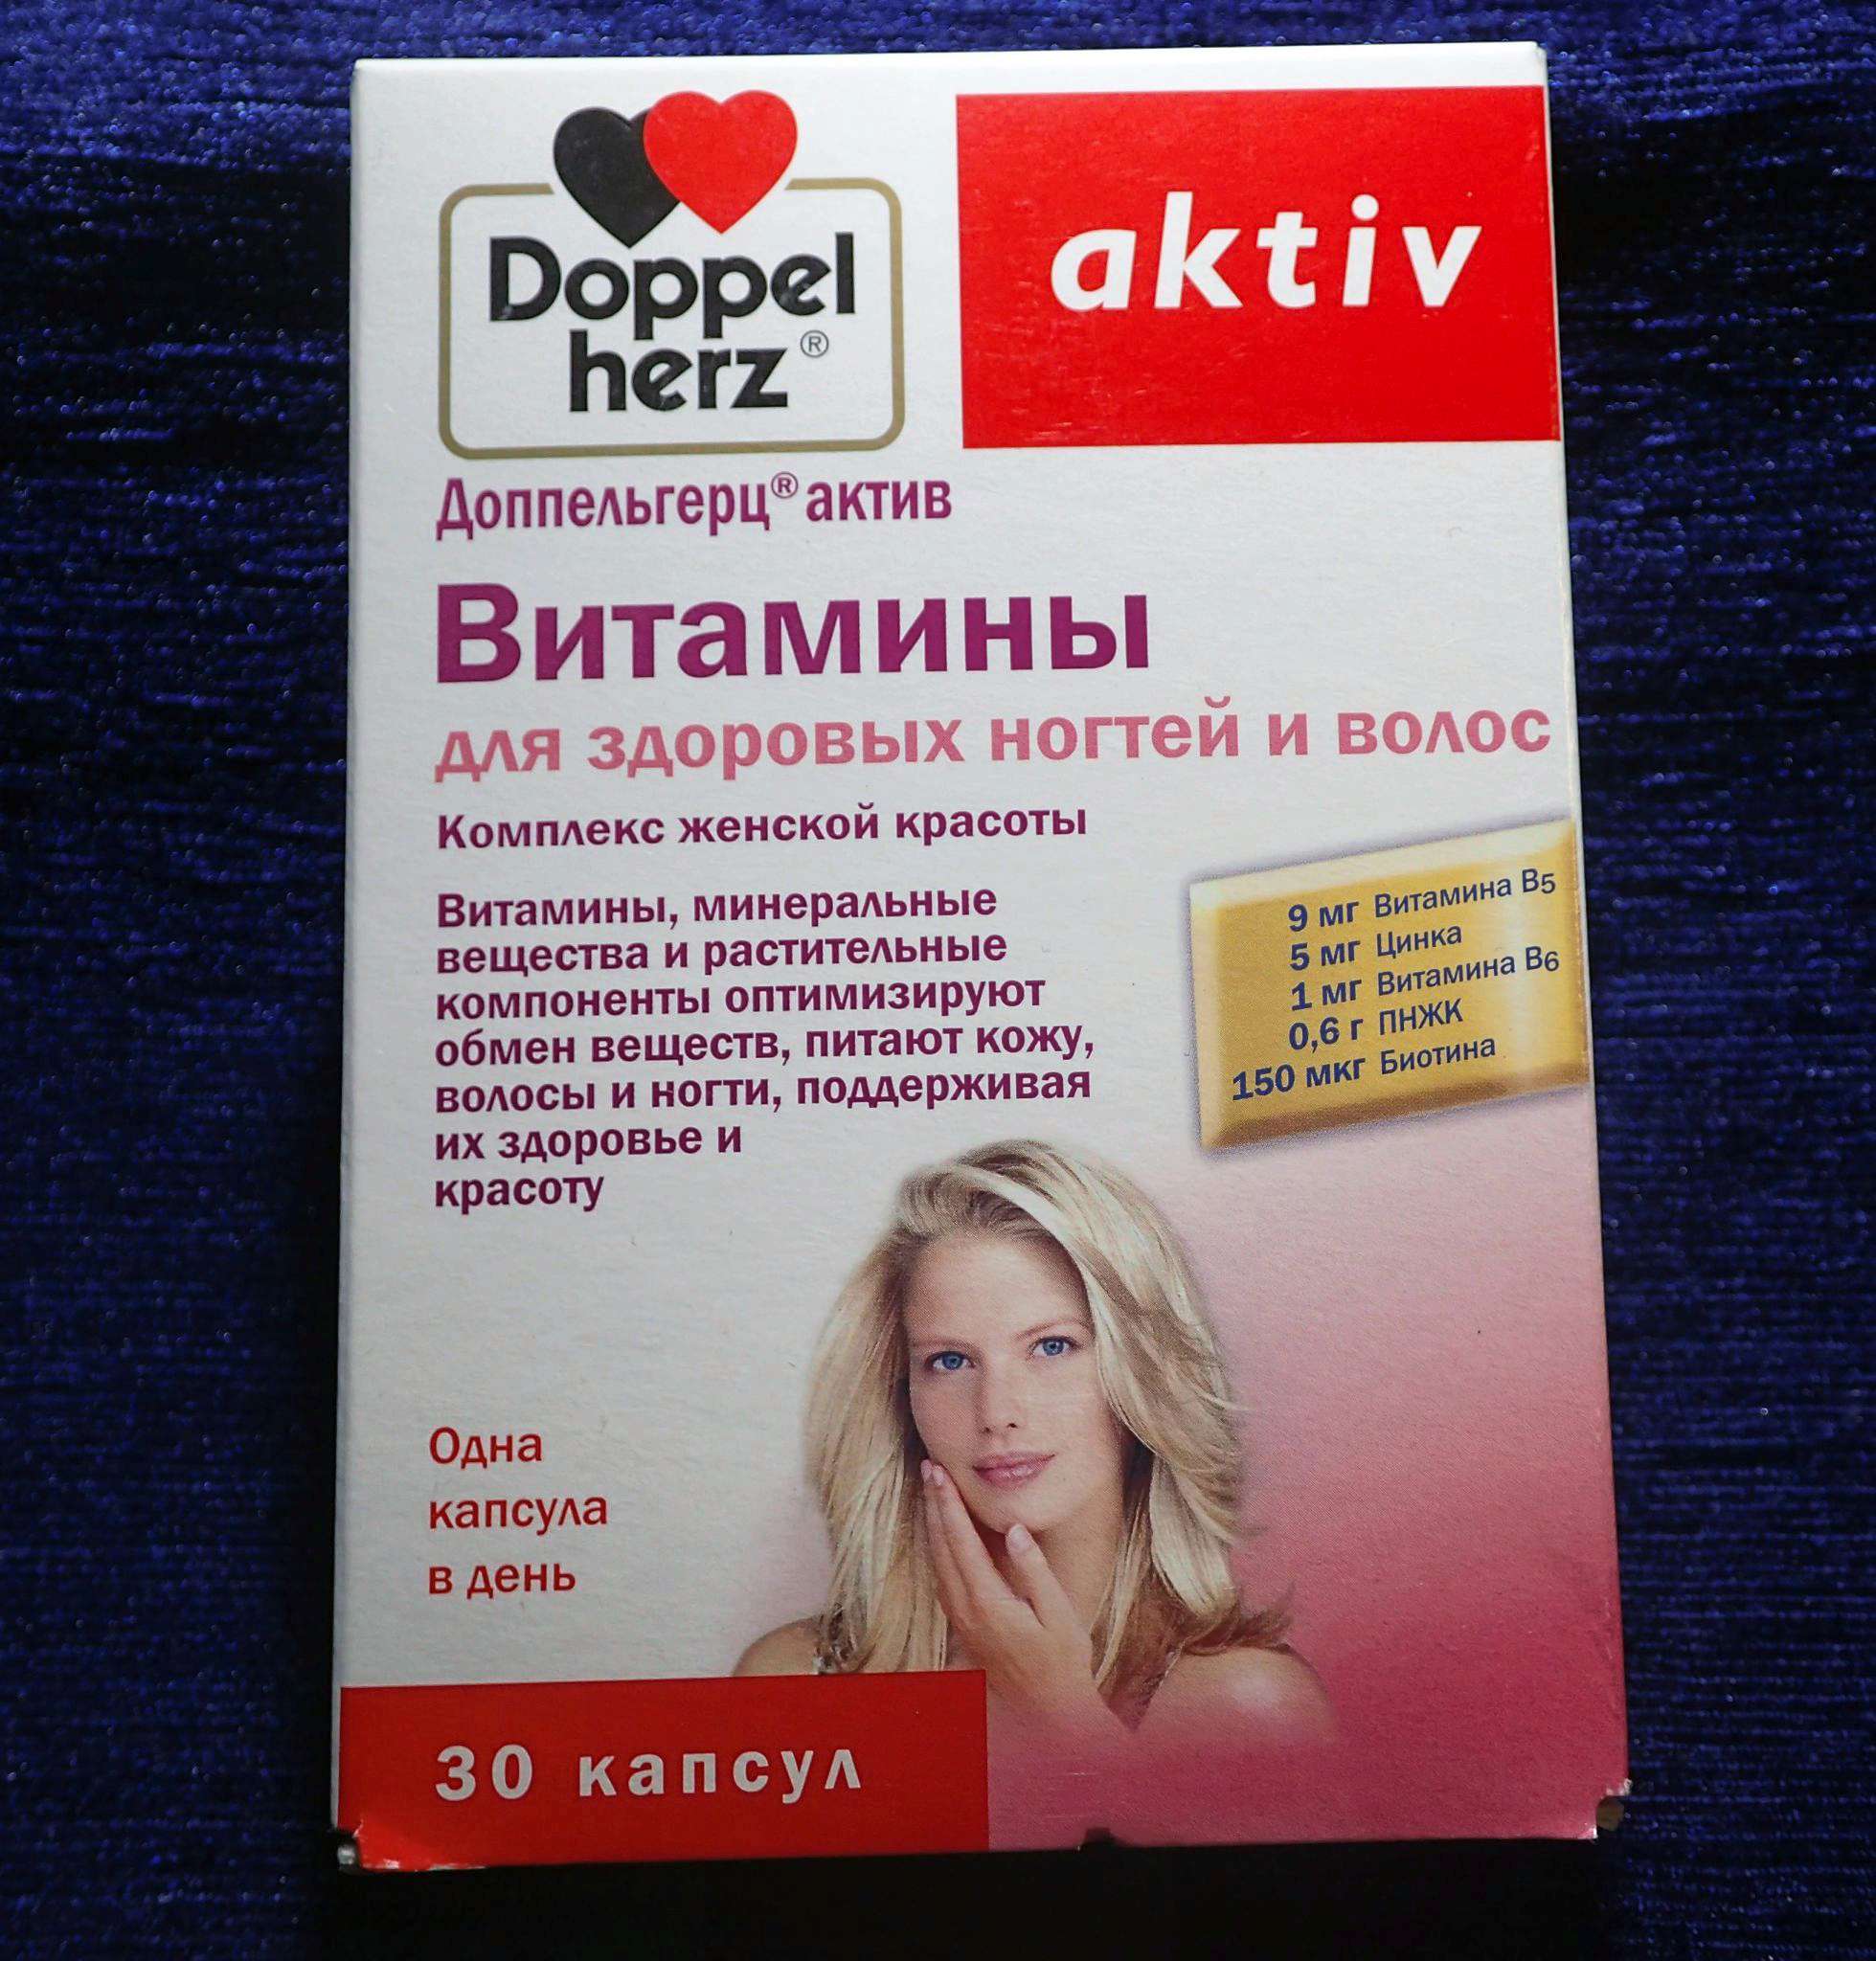 Лучшие витамины для женщины при климаксе. Витаминно-минеральный комплекс для женщин Doppelherz. Doppel Herz aktiv витамины для волос. Доппельгерц Актив менопауза. Доппельгерц Актив витамины для женщин.